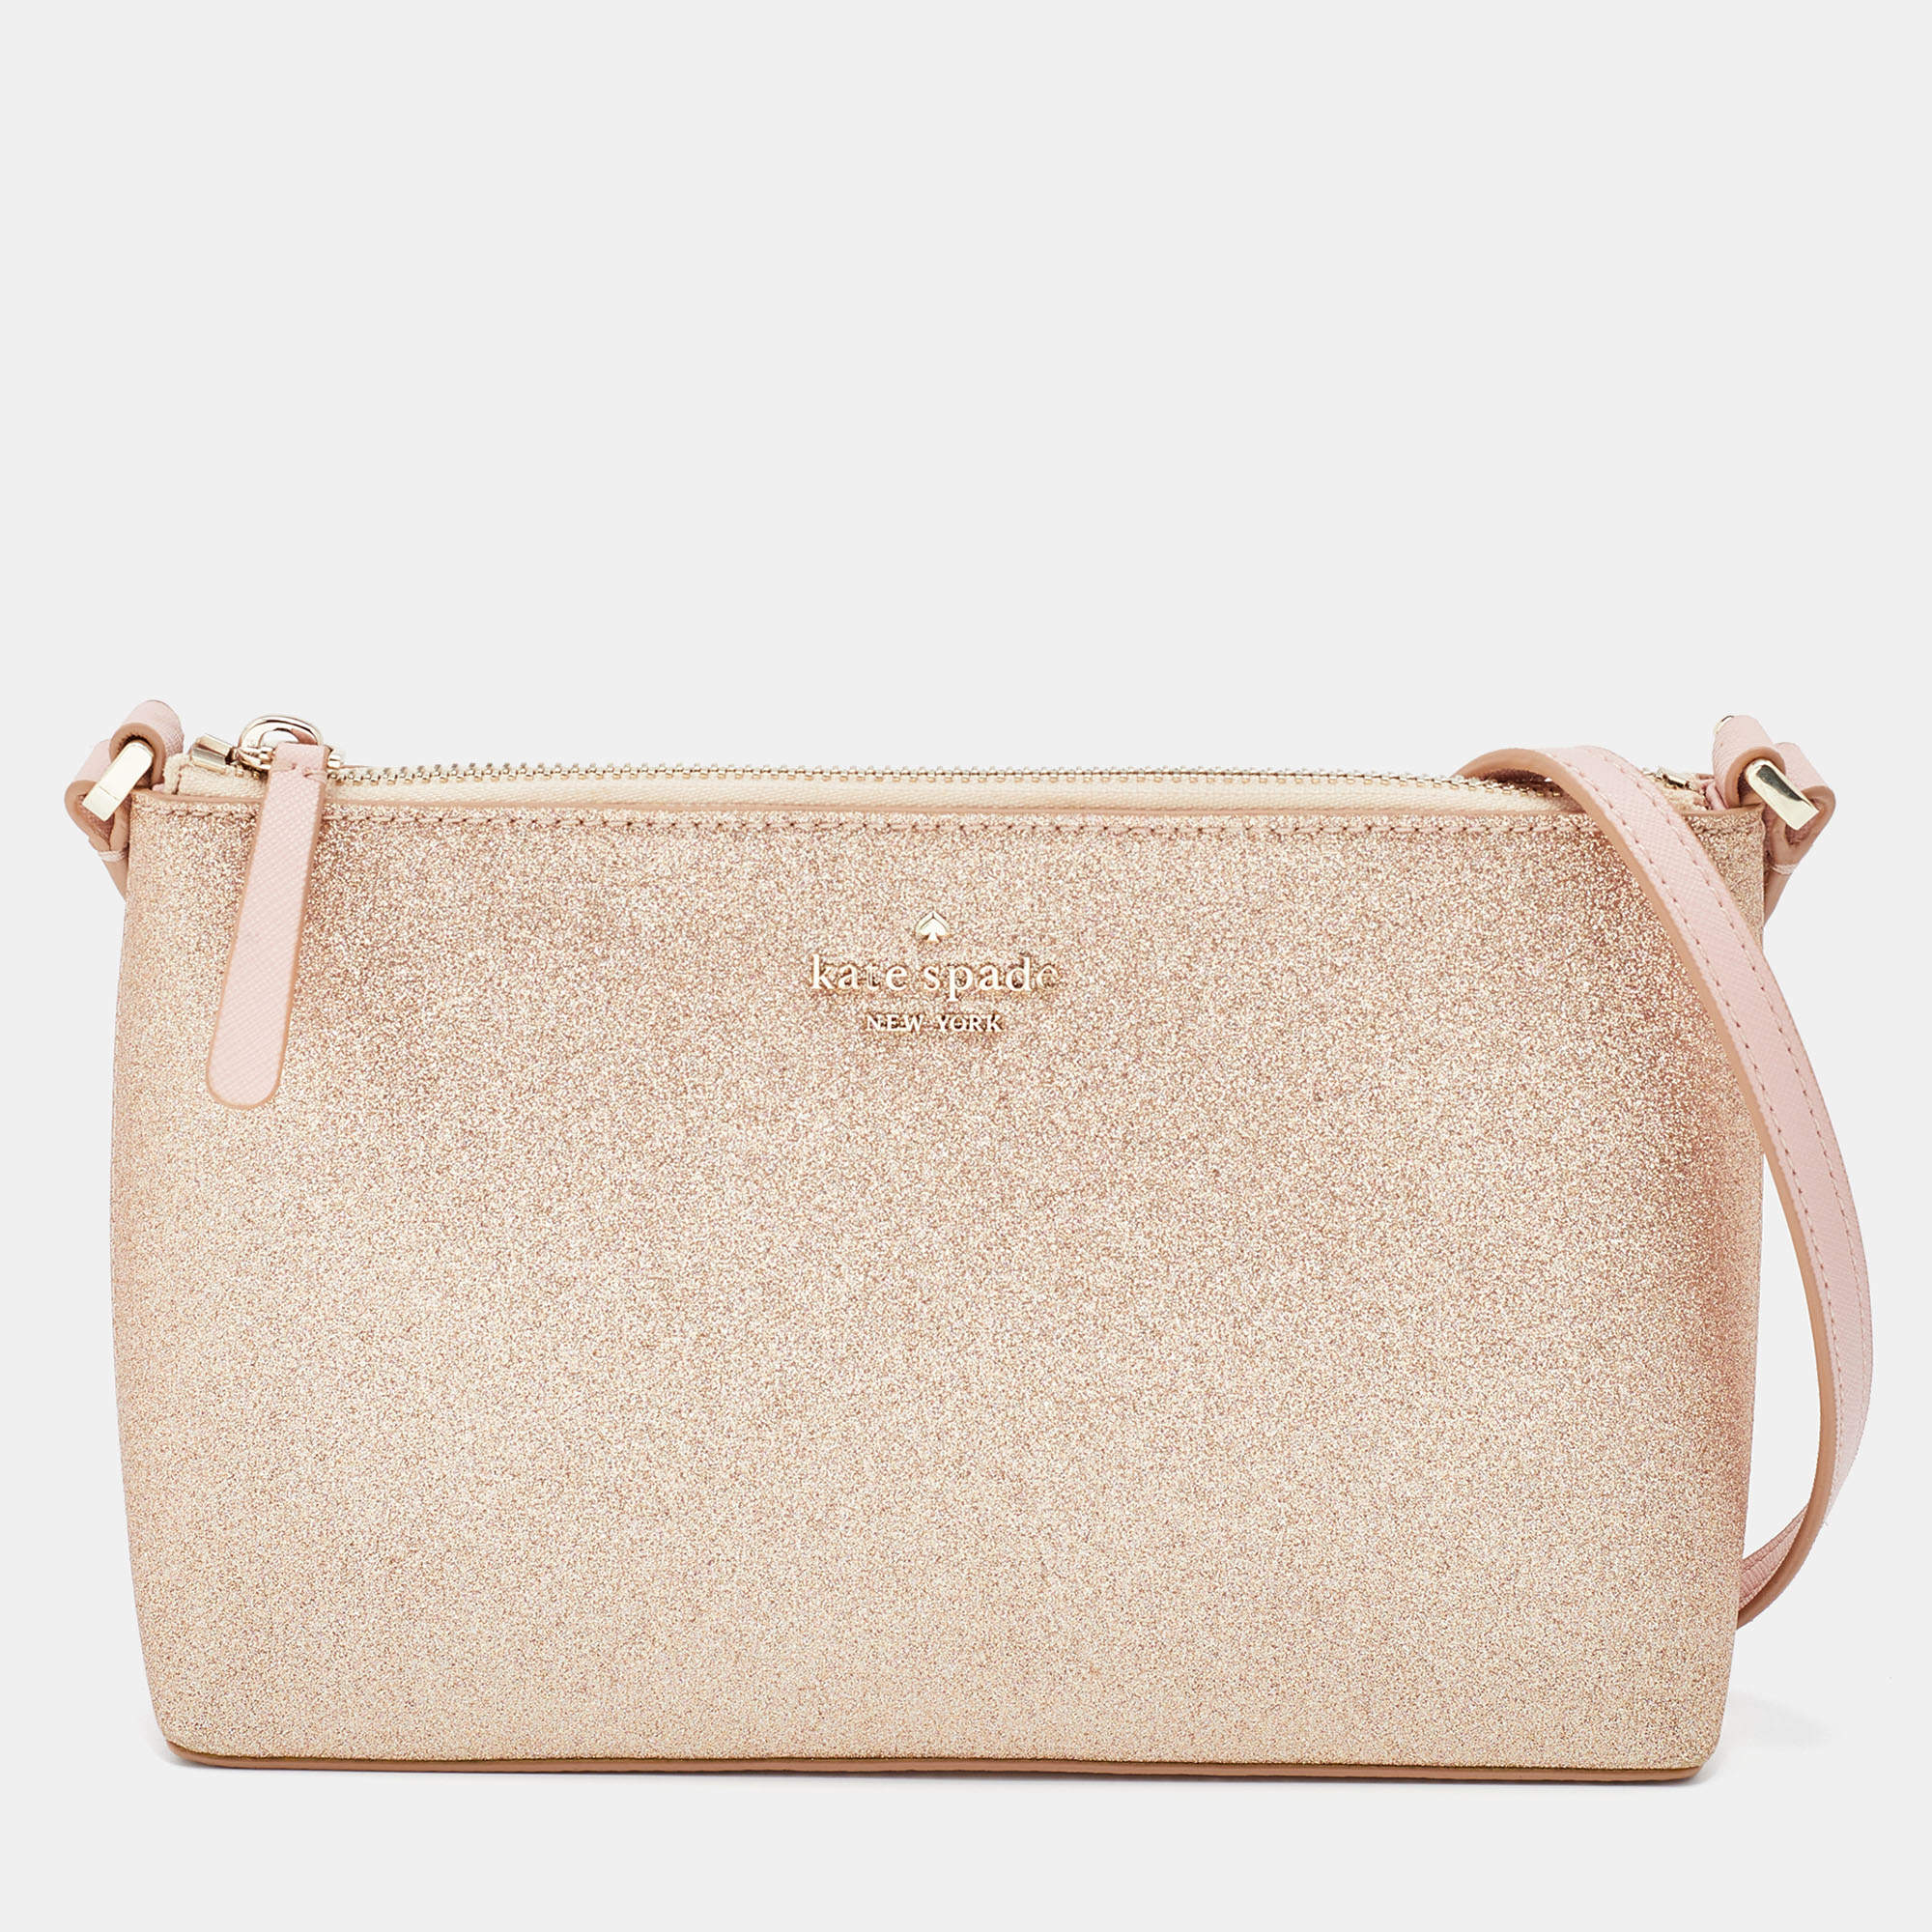 Kate Spade Rose Gold/Pink Glitter and Leather Shoulder Bag